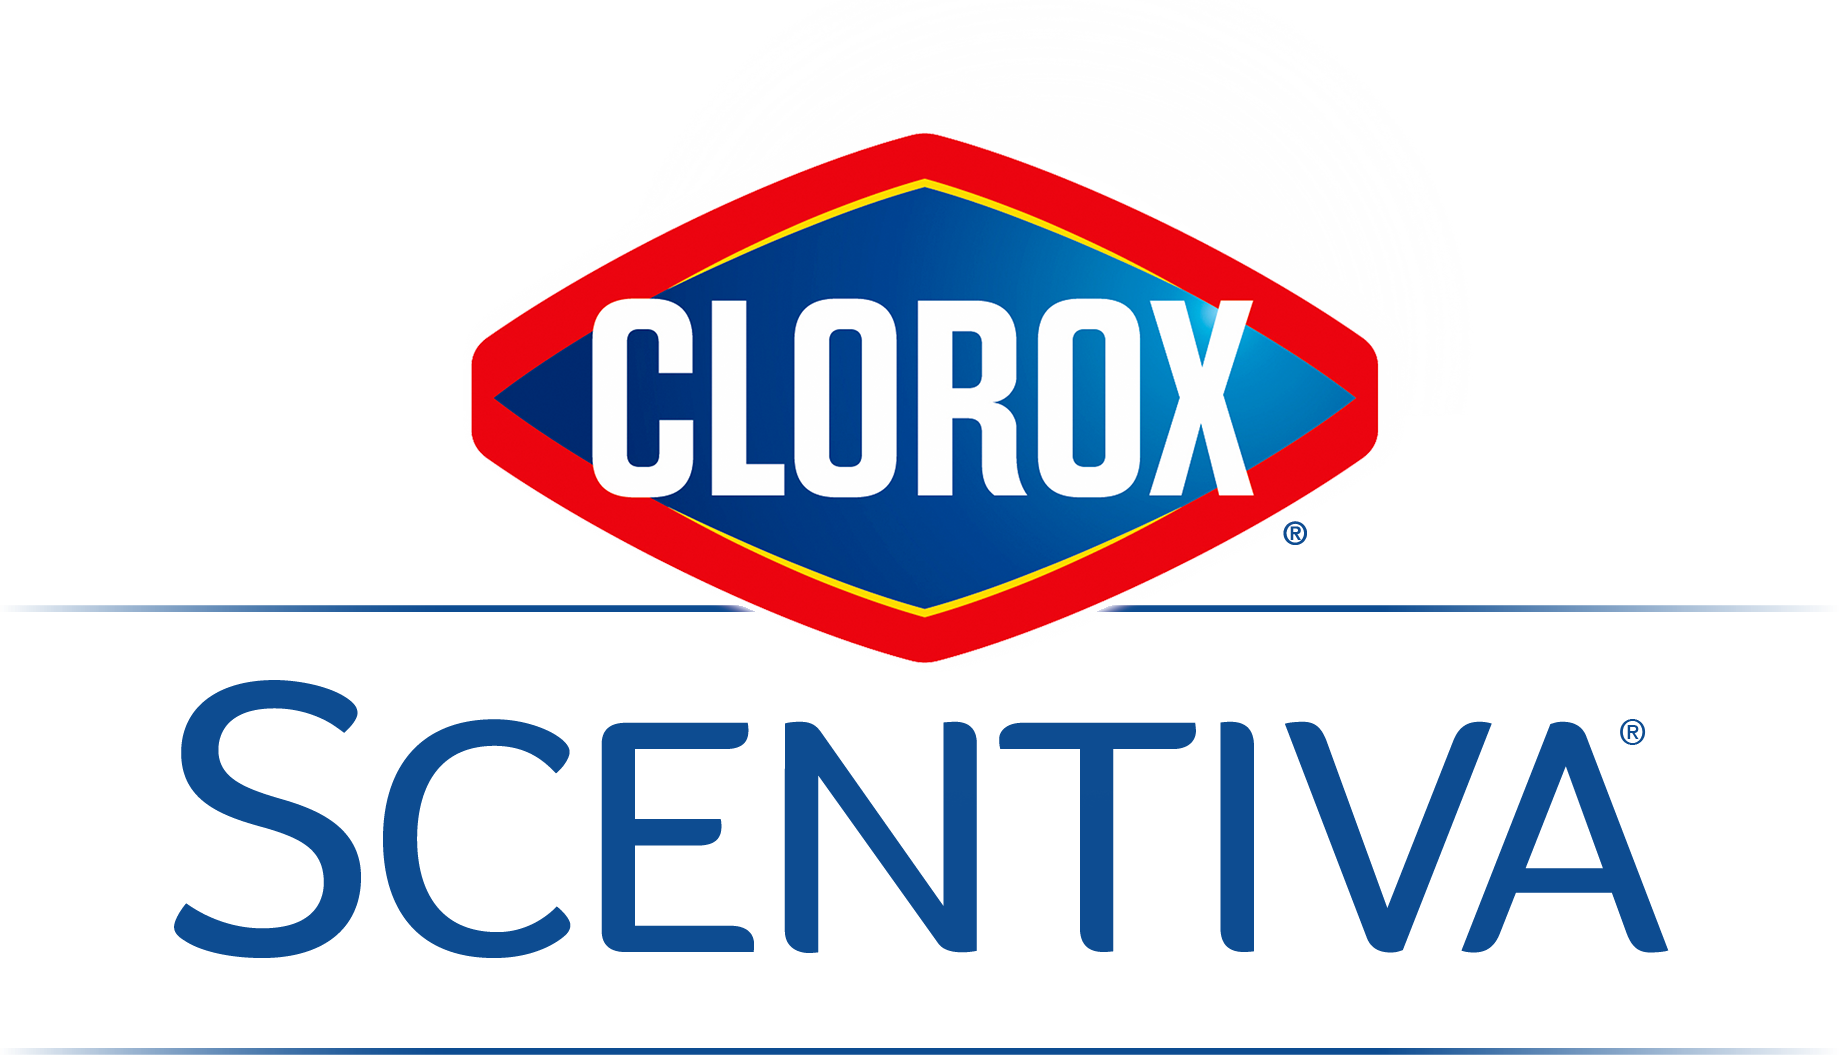 Clorox Scentiva Logo